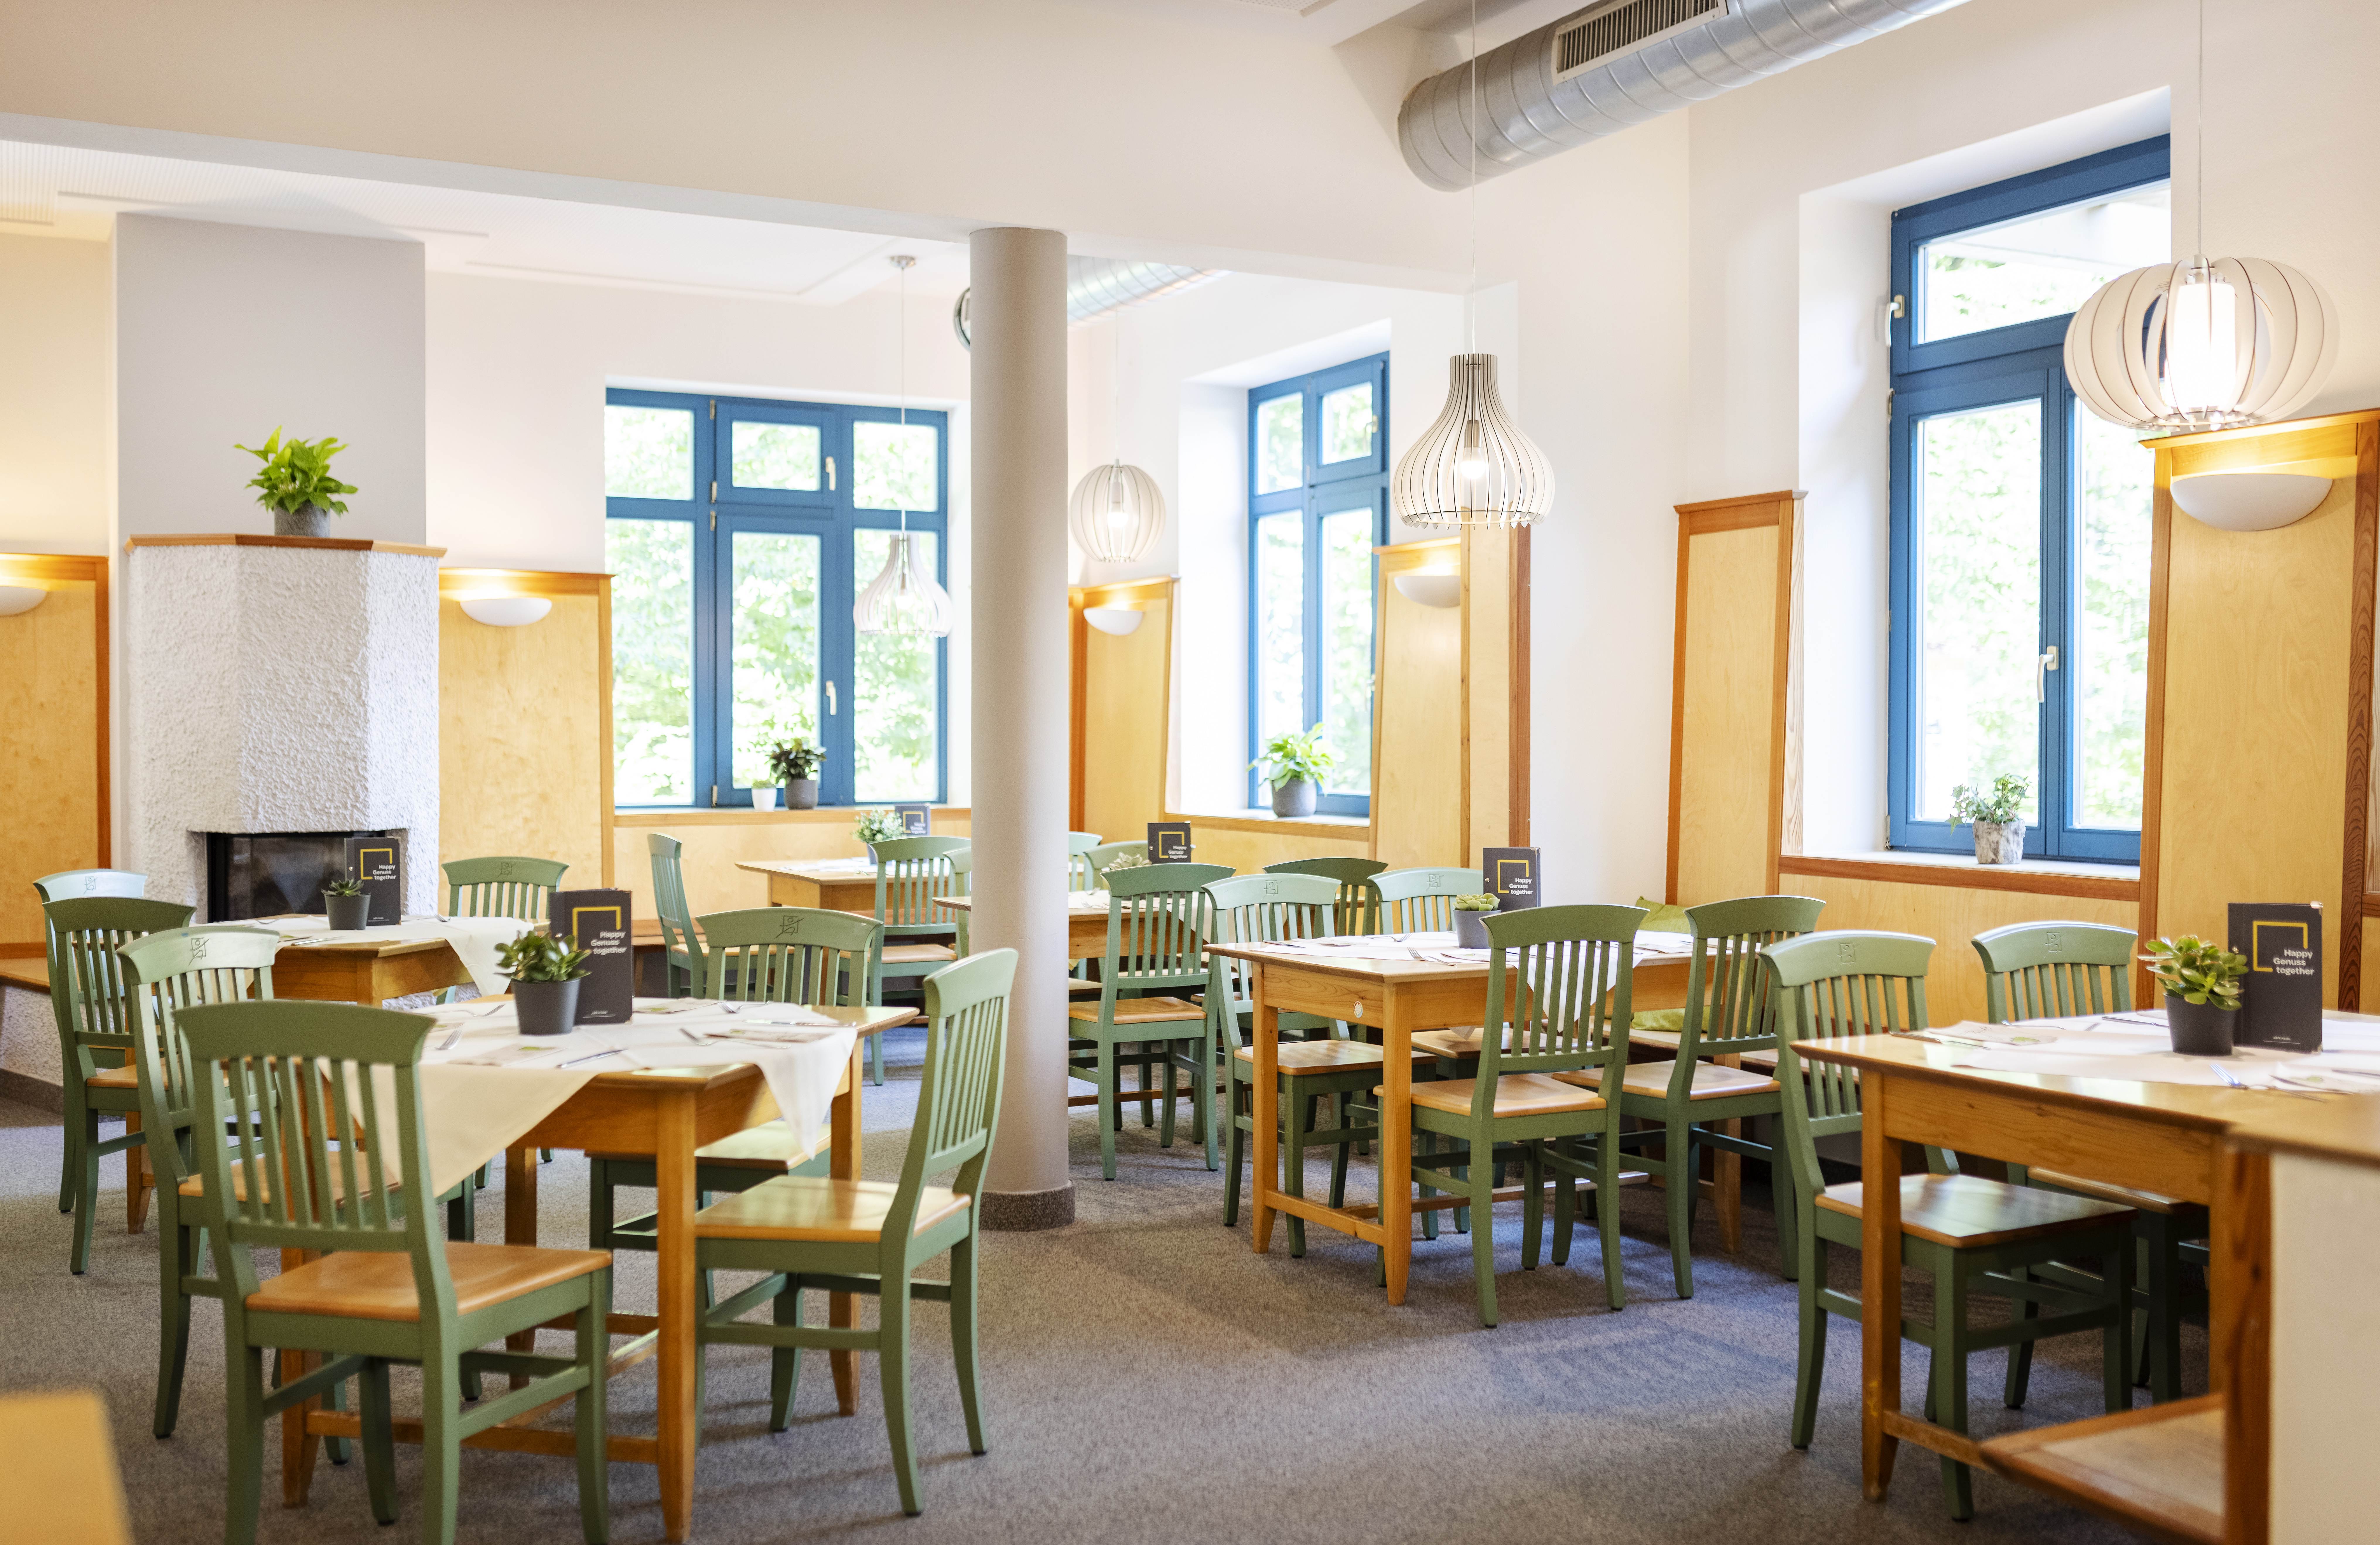 Sie sehen den Restaurant Bereich im JUFA Hotel im Weitental / Bruck a.d. Mur. Der Ort für erholsamen Familienurlaub und einen unvergesslichen Winter- und Wanderurlaub.